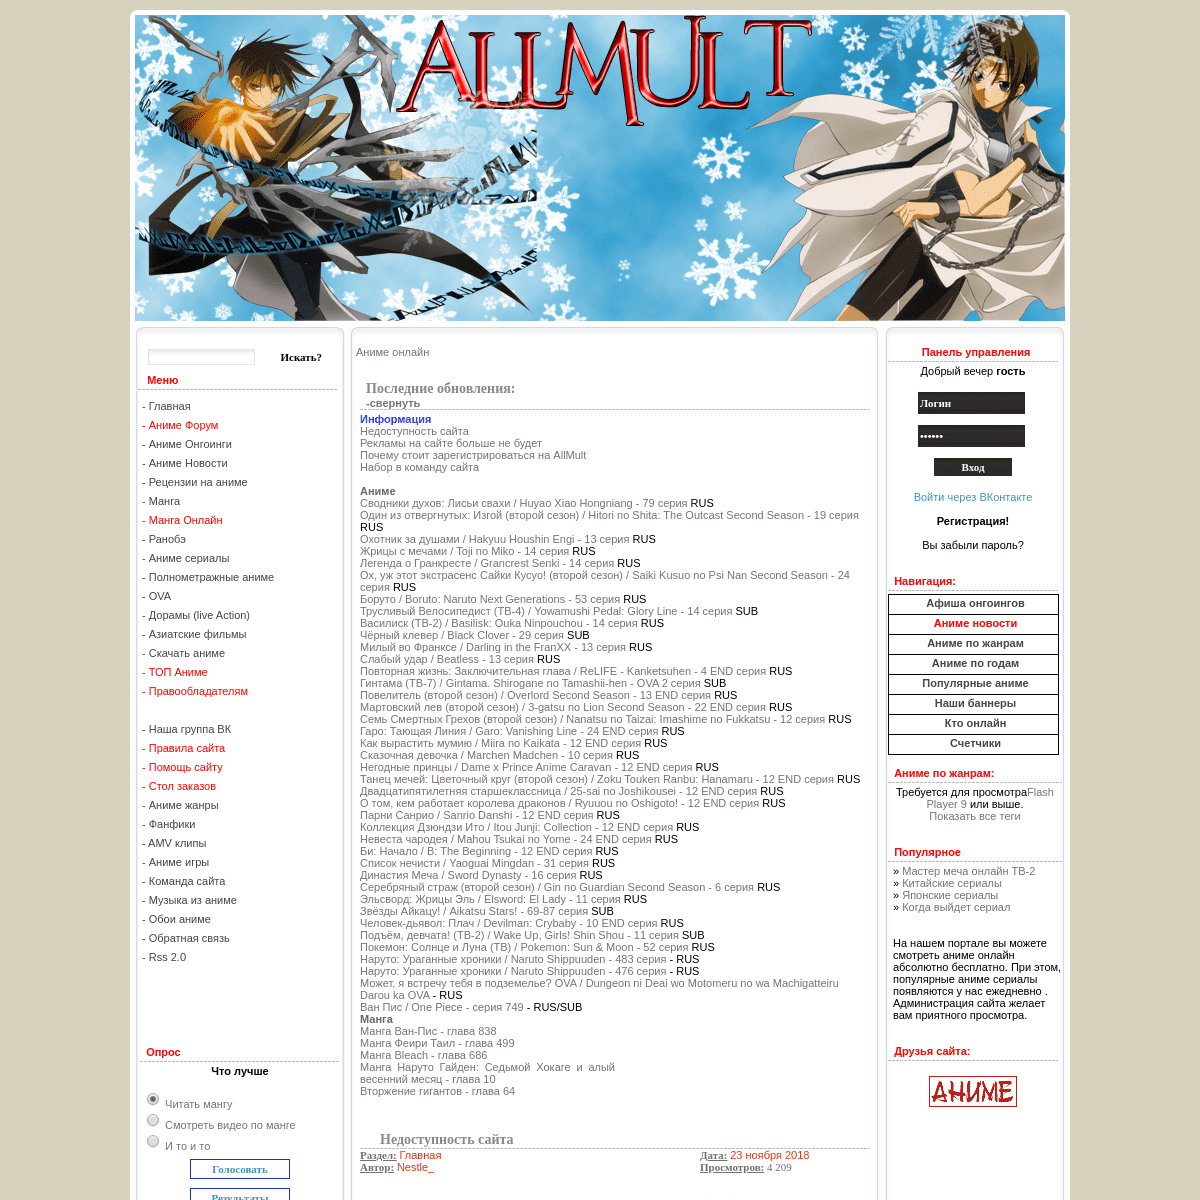 A complete backup of allmult.com